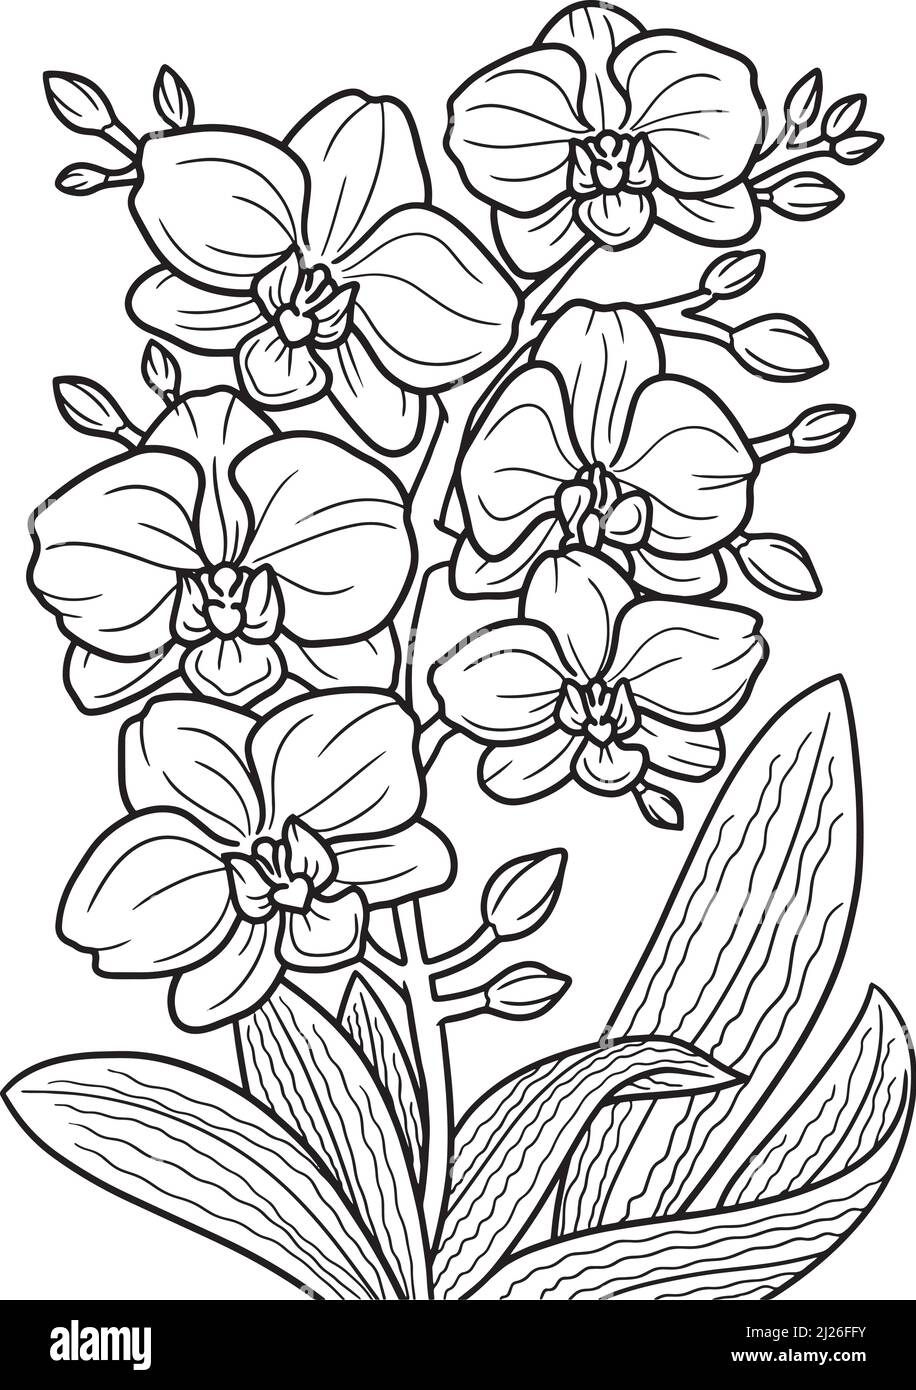 Diseño de orquídea Imágenes de stock en blanco y negro - Alamy